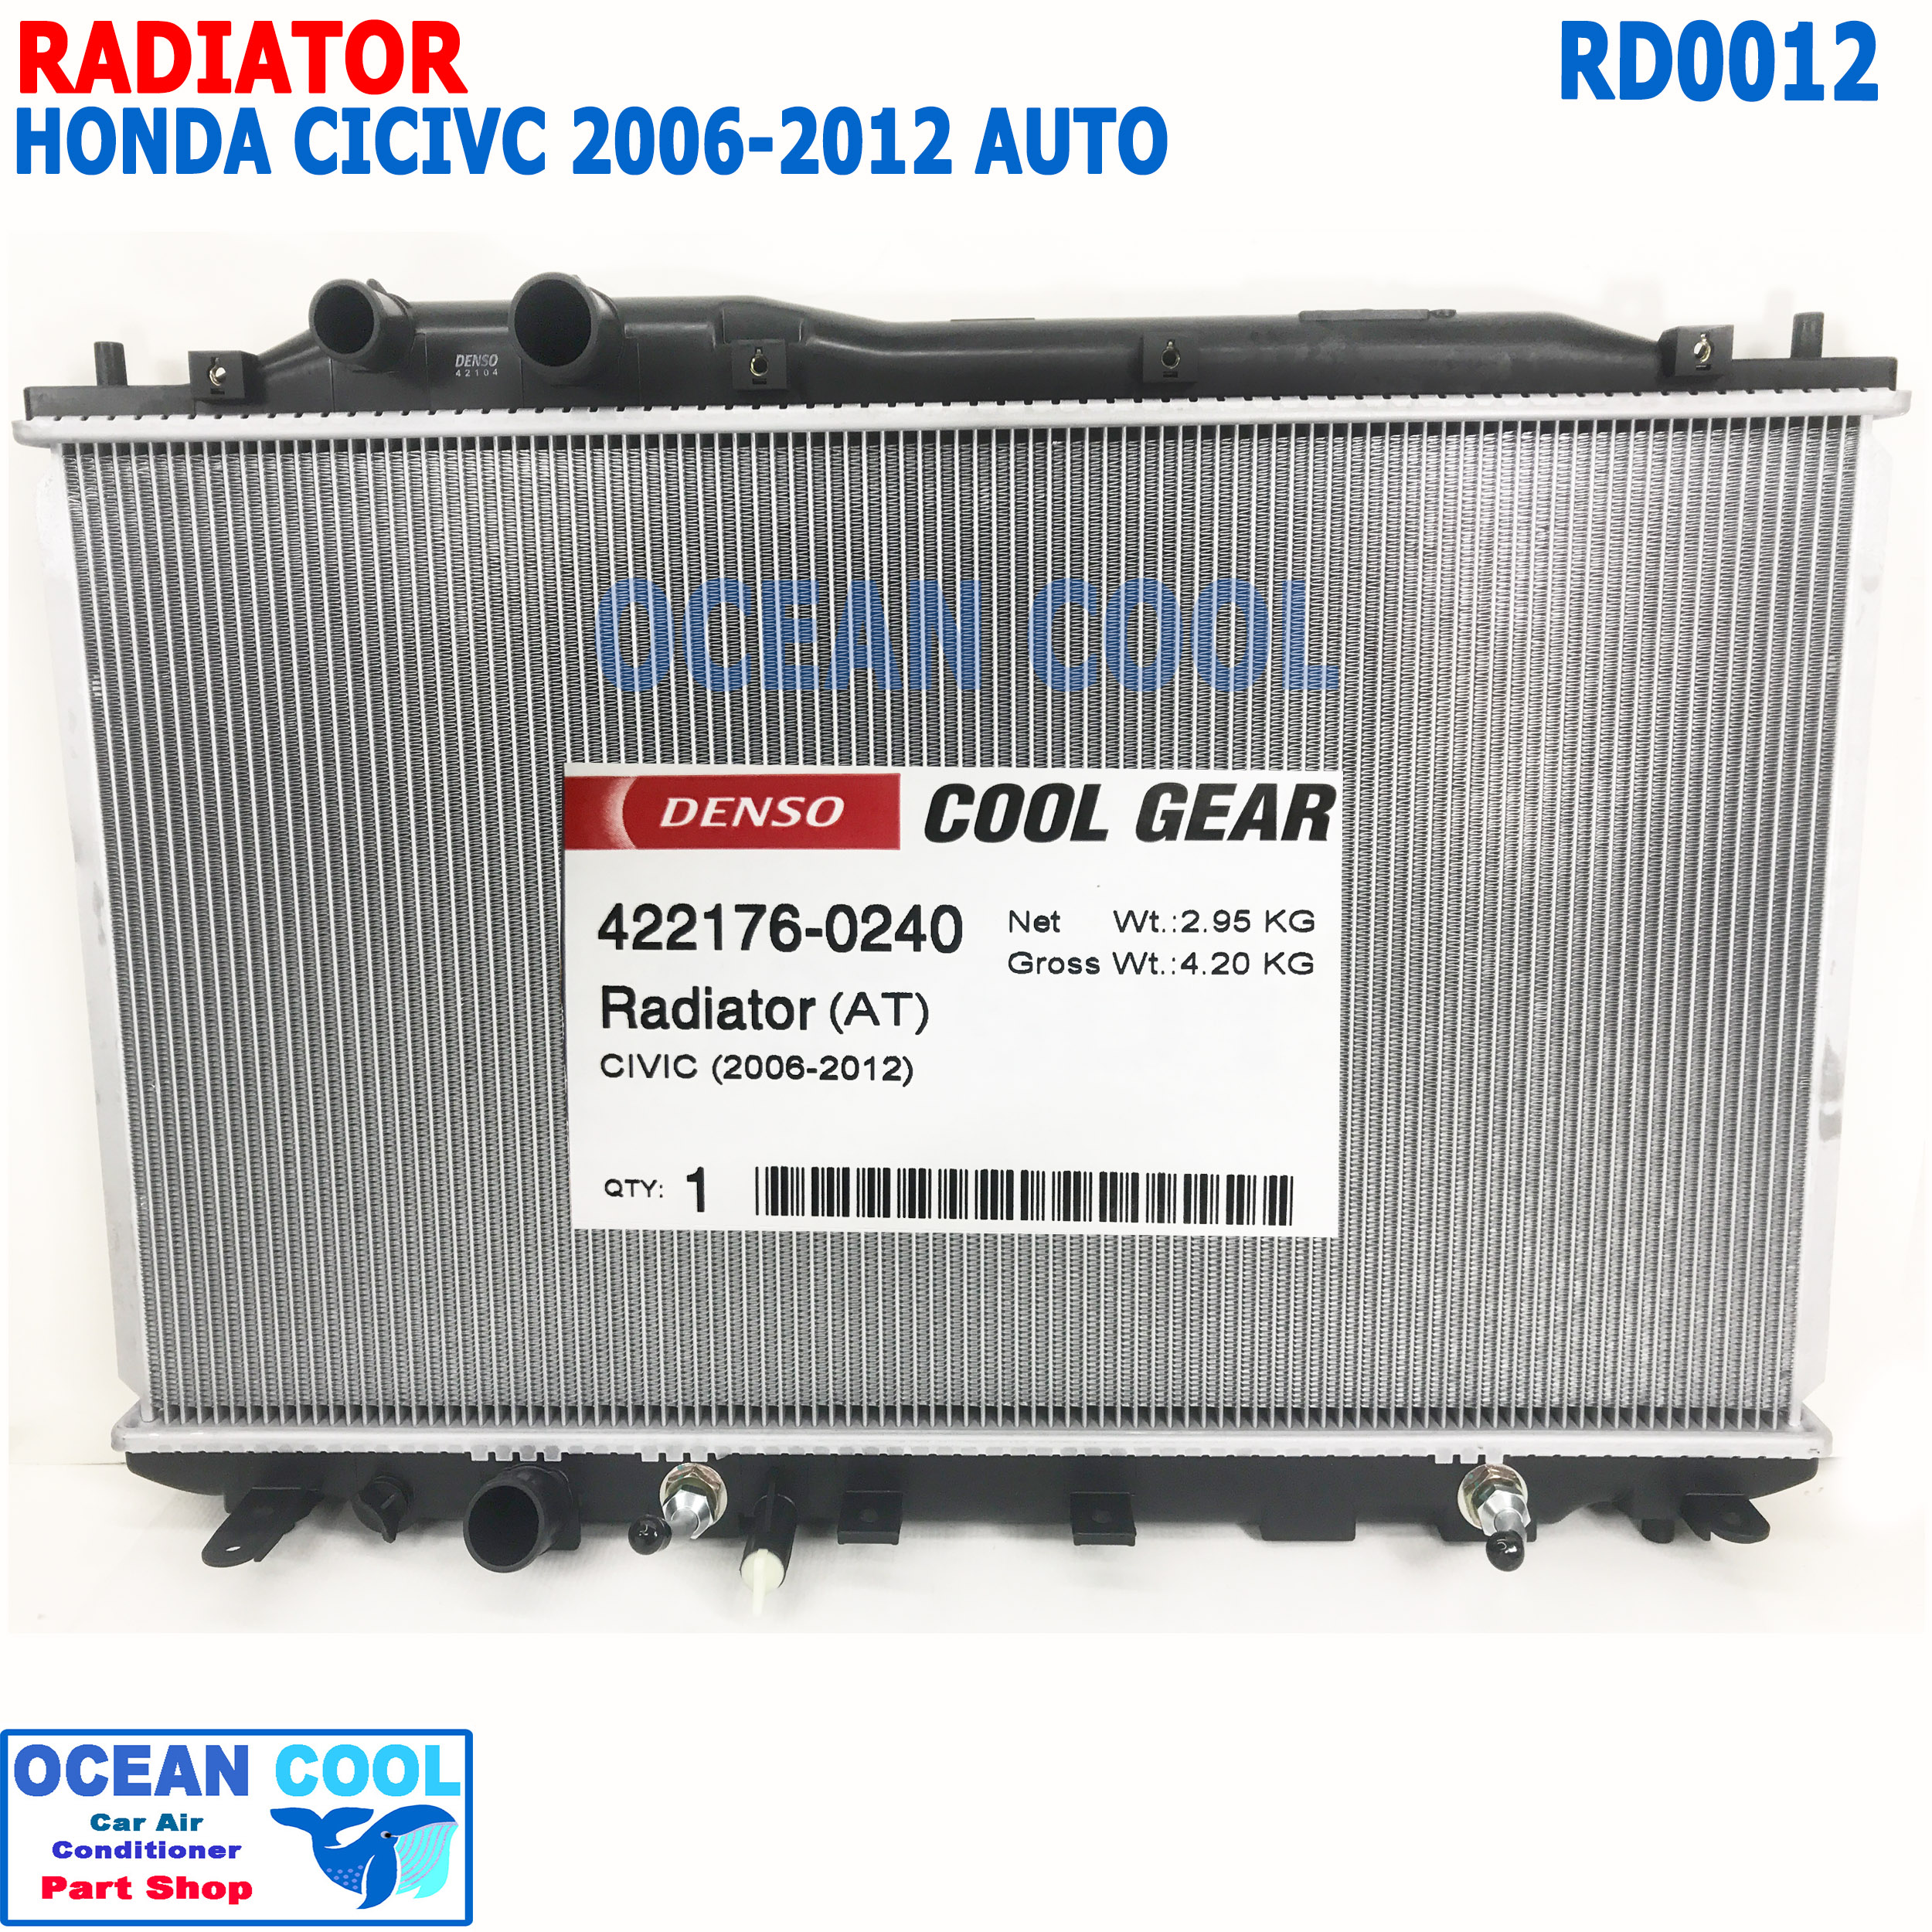 หม้อน้ำ ฮอนด้า ซีวิค FD นางฟ้า 2006 - 2011 เกียร์ ออโต้ เครื่อง 1.8 , 2.0  RD0012 หนา 16 มิล Cool Gear รหัส 422176-0240 พ.ศ. 2549 ถึง 2554  radiator HONDA CIVIC  AUTO 2007 2008 2009 2010 HYBRID